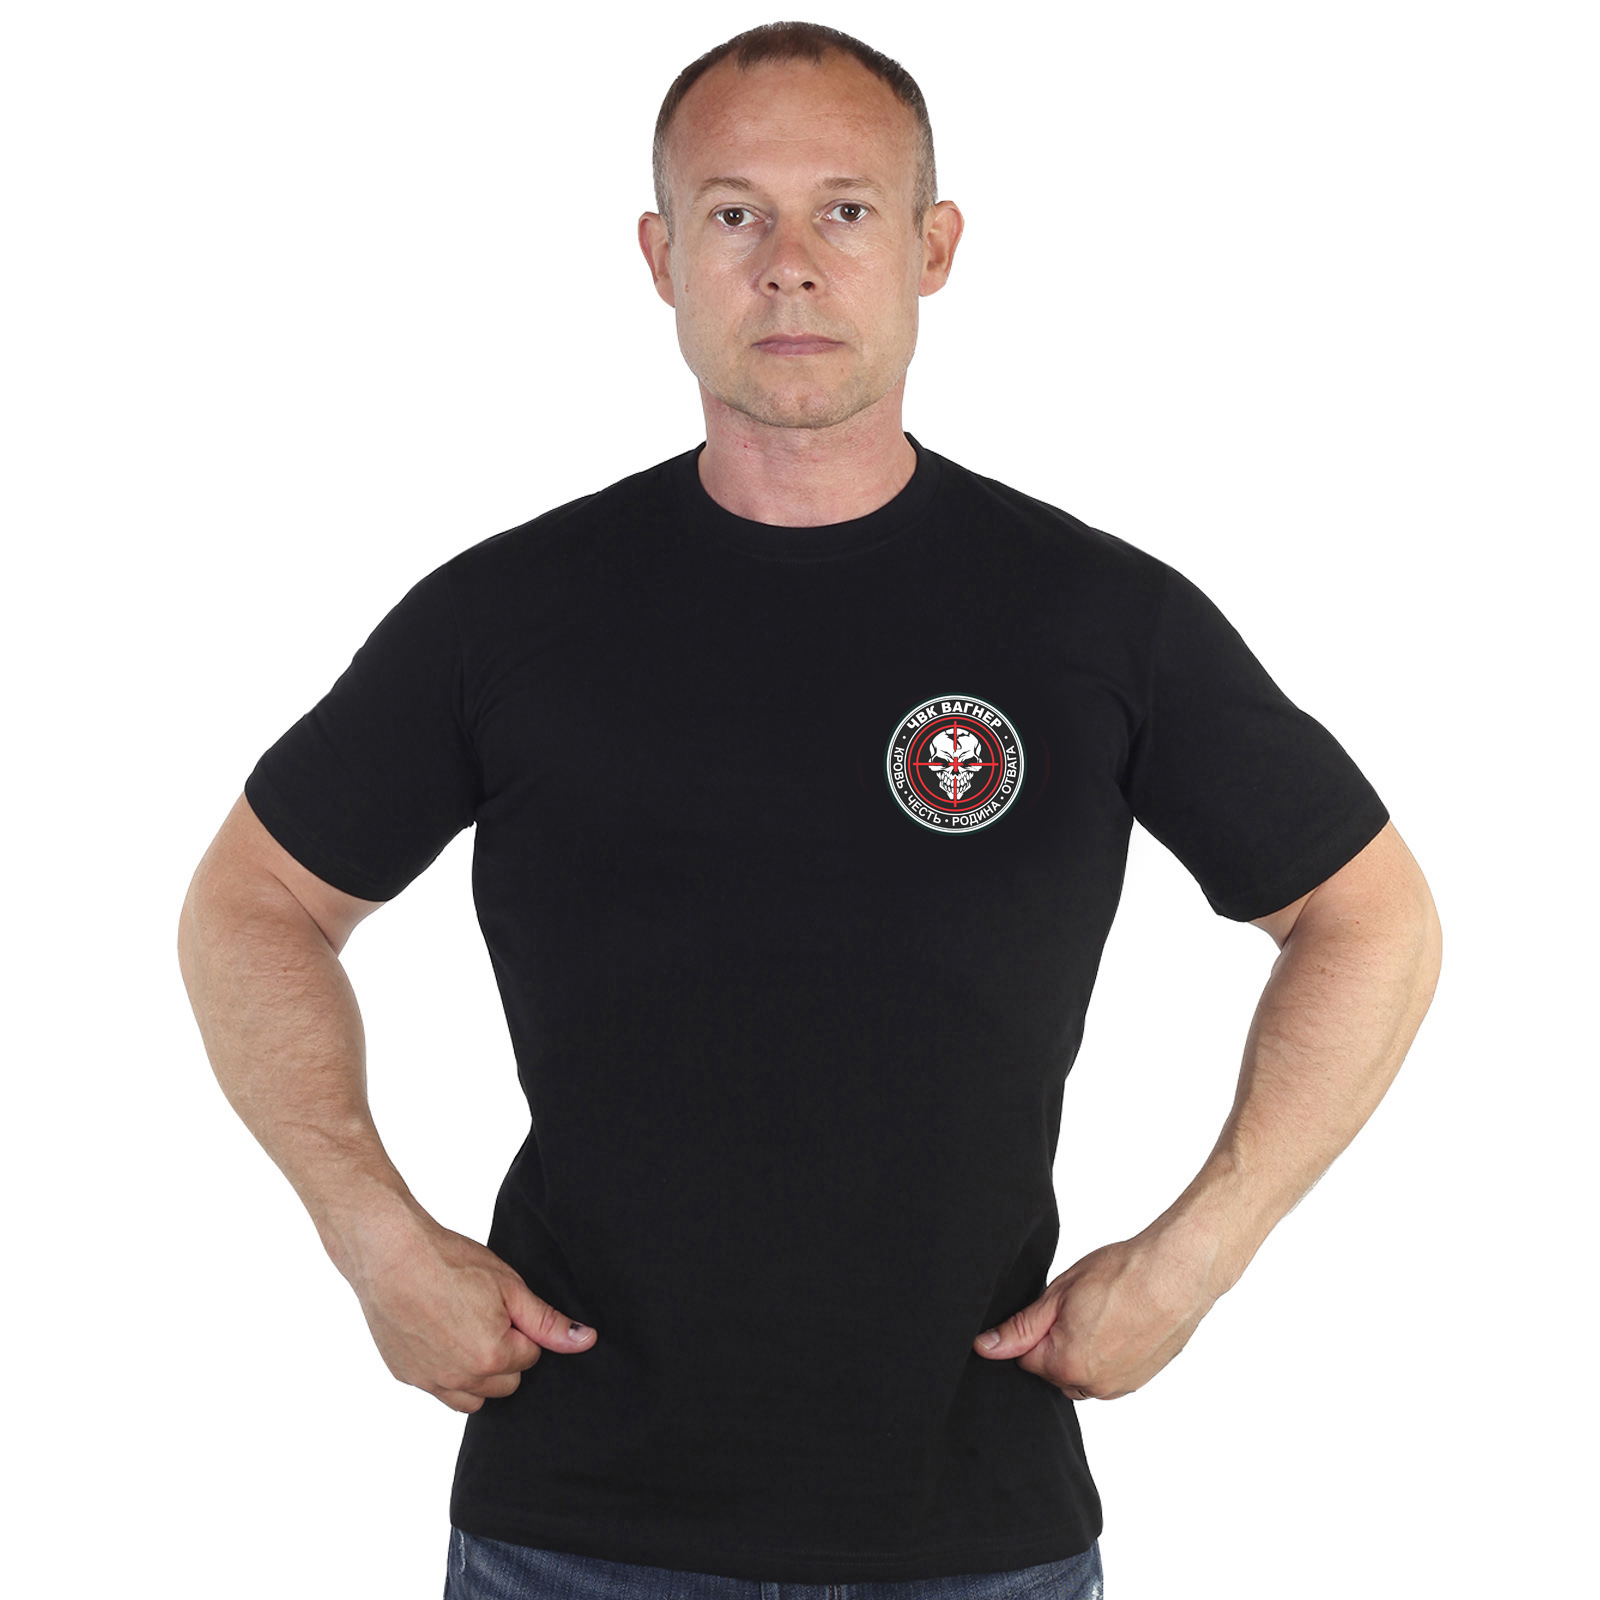 Чёрная футболка с термопринтом "Группа Вагнера"